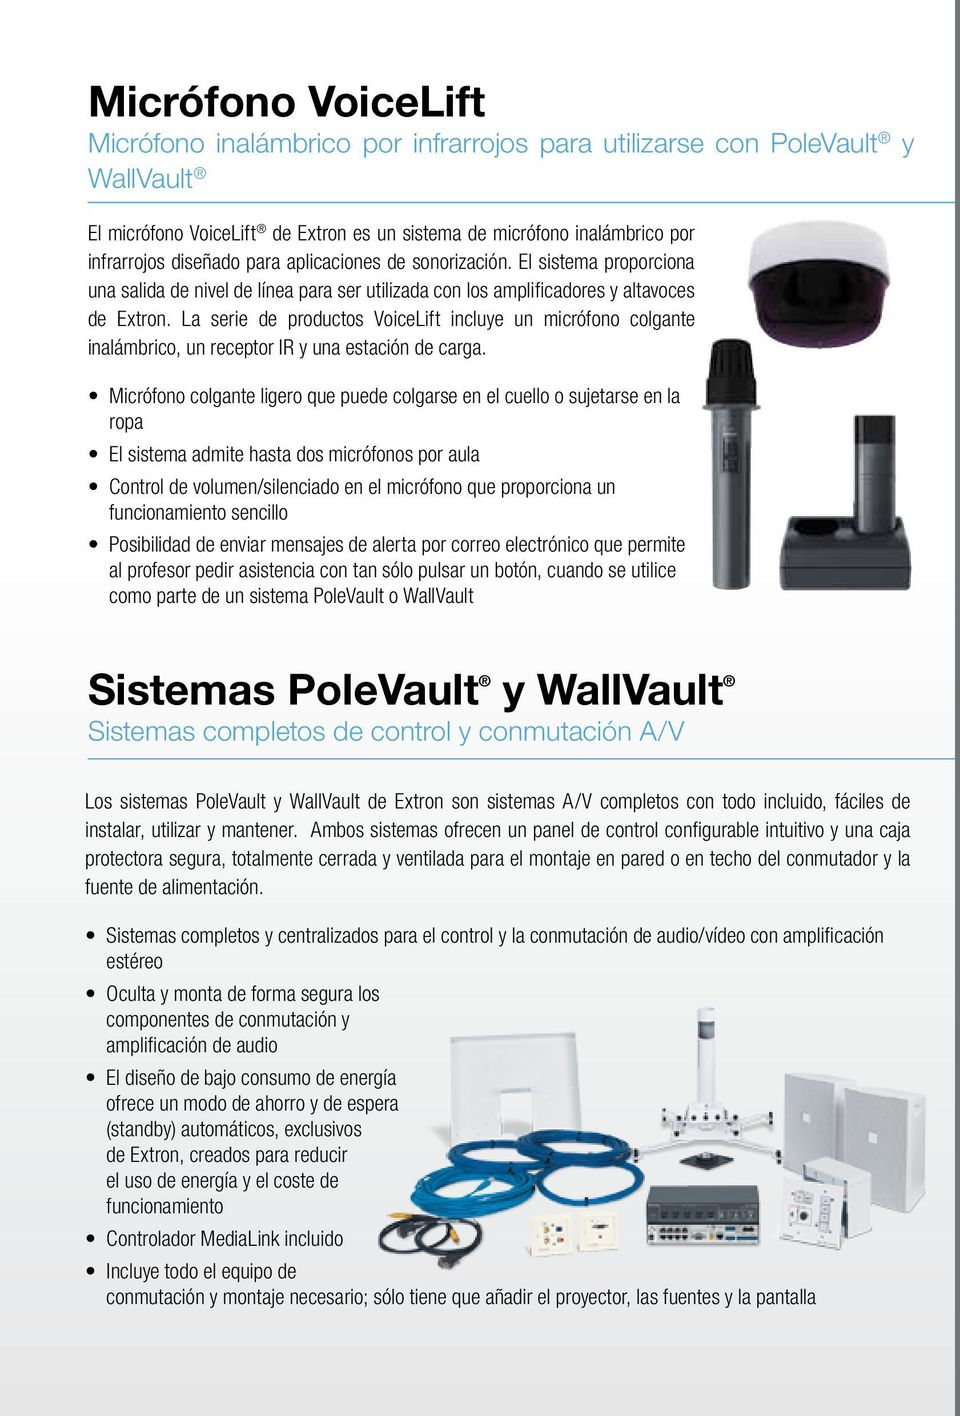 La serie de productos VoiceLift incluye un micrófono colgante inalámbrico, un receptor IR y una estación de carga.